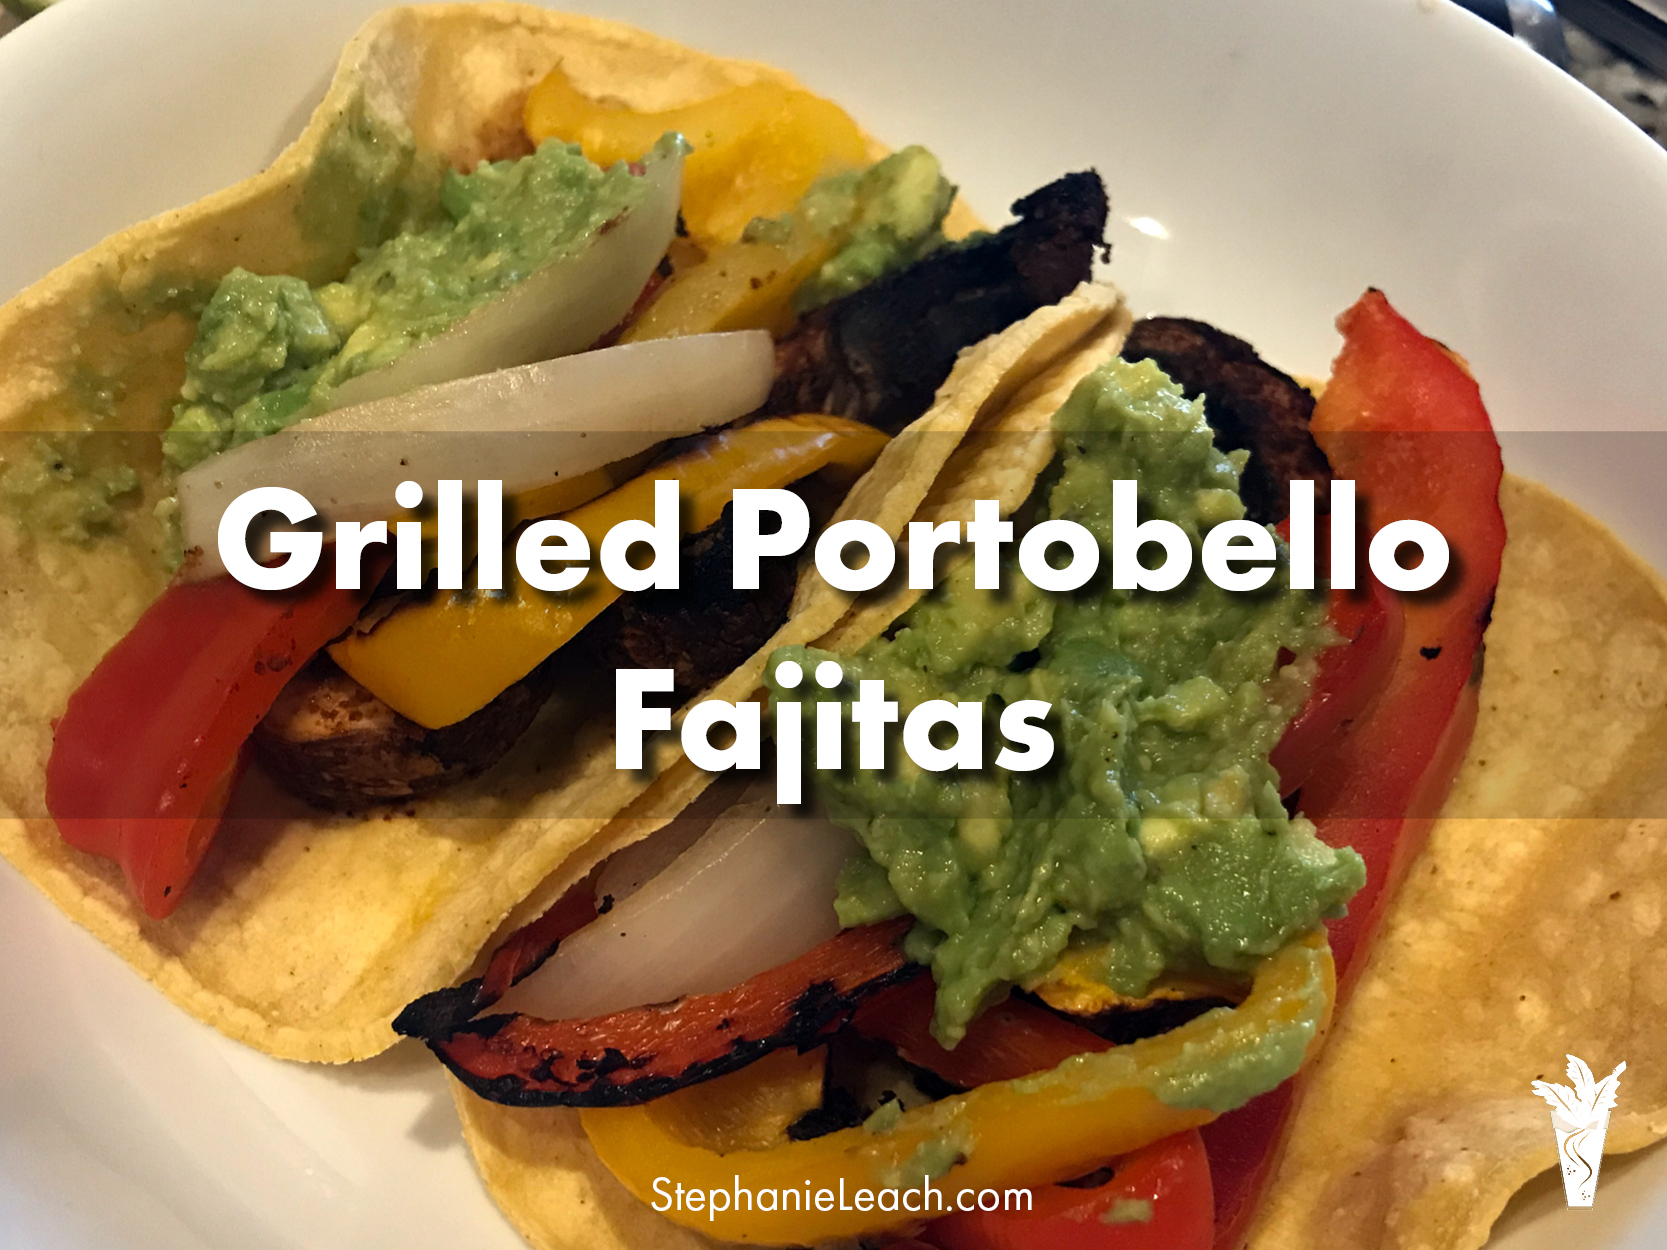 Grilled Portobello Fajitas WFPB Recipe